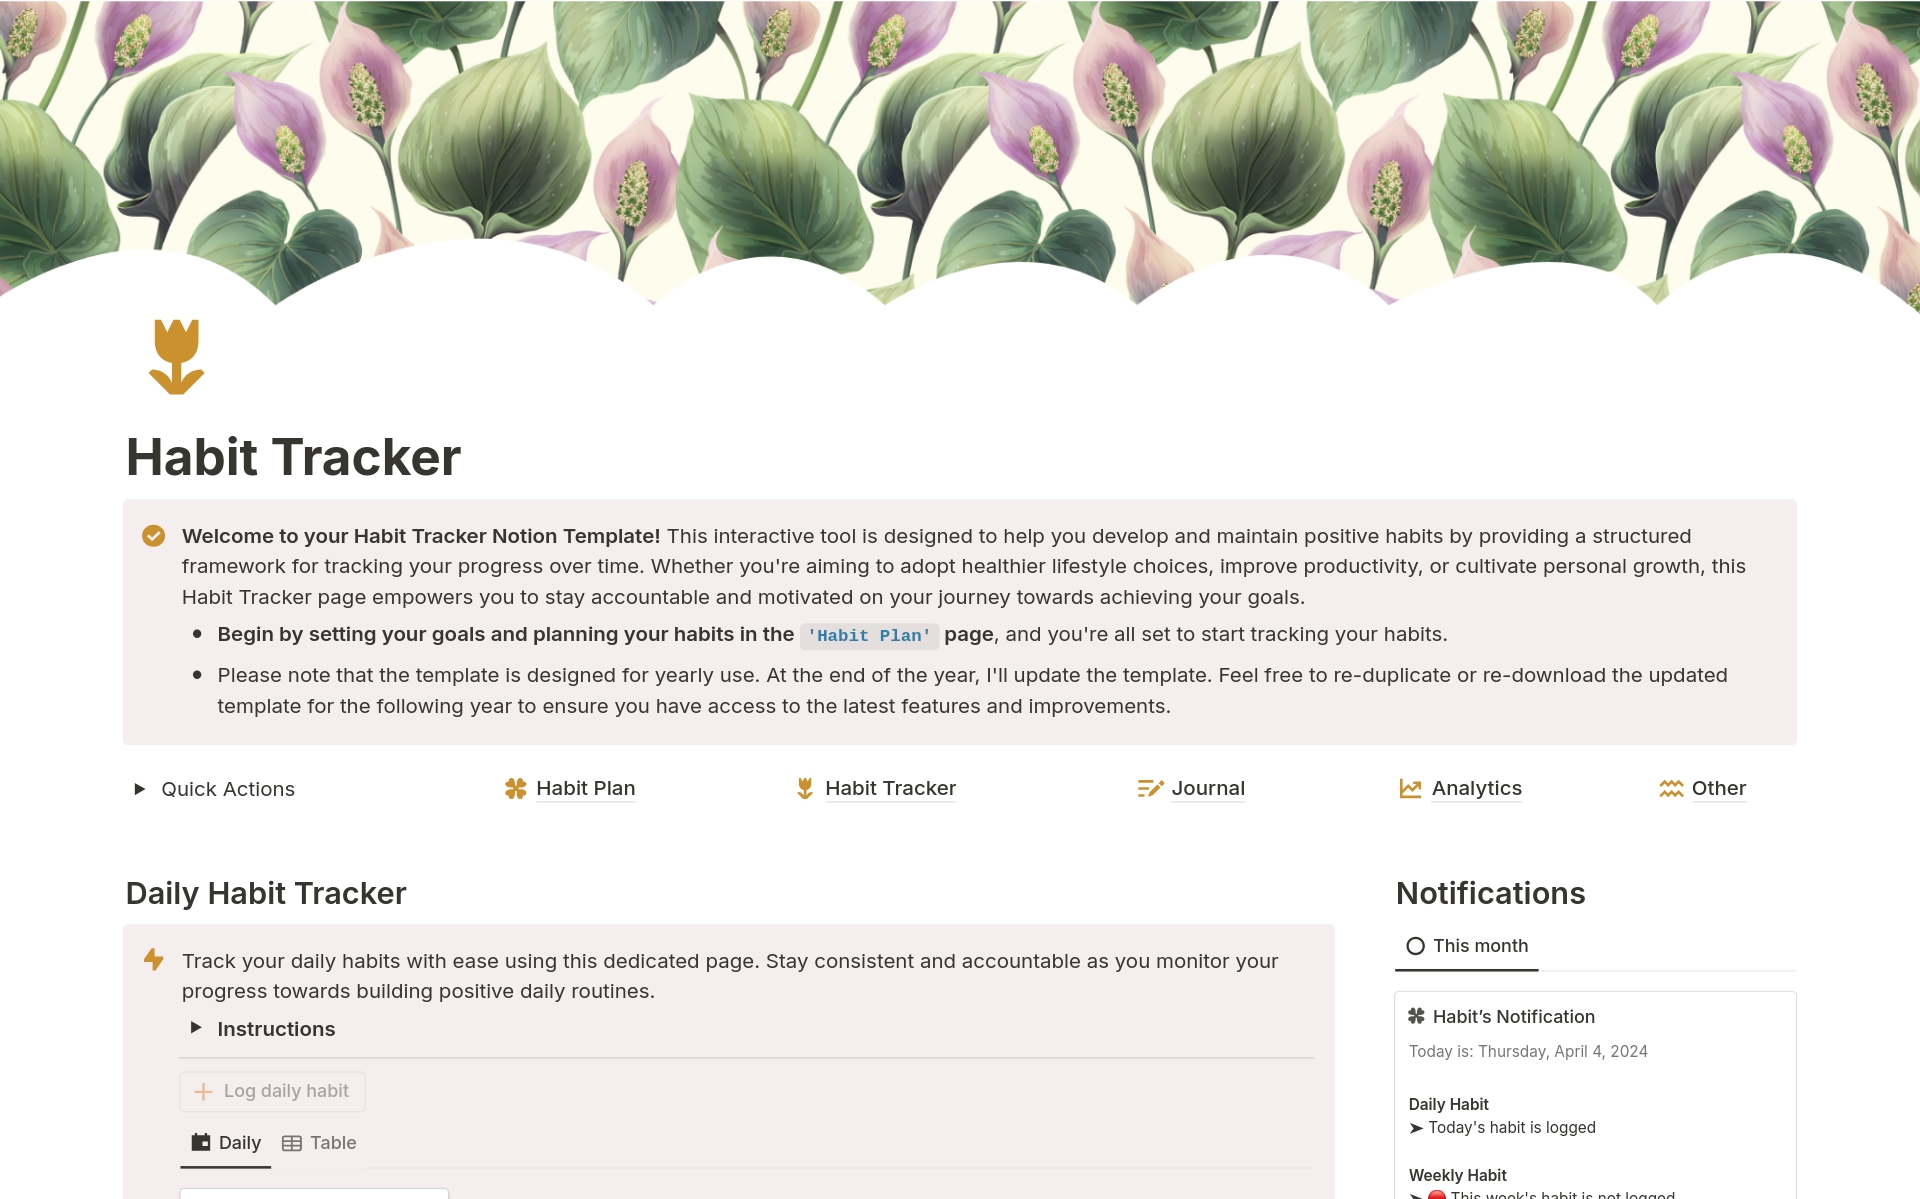 Uma prévia do modelo para Habit Tracker, Weekly Habit Tracker